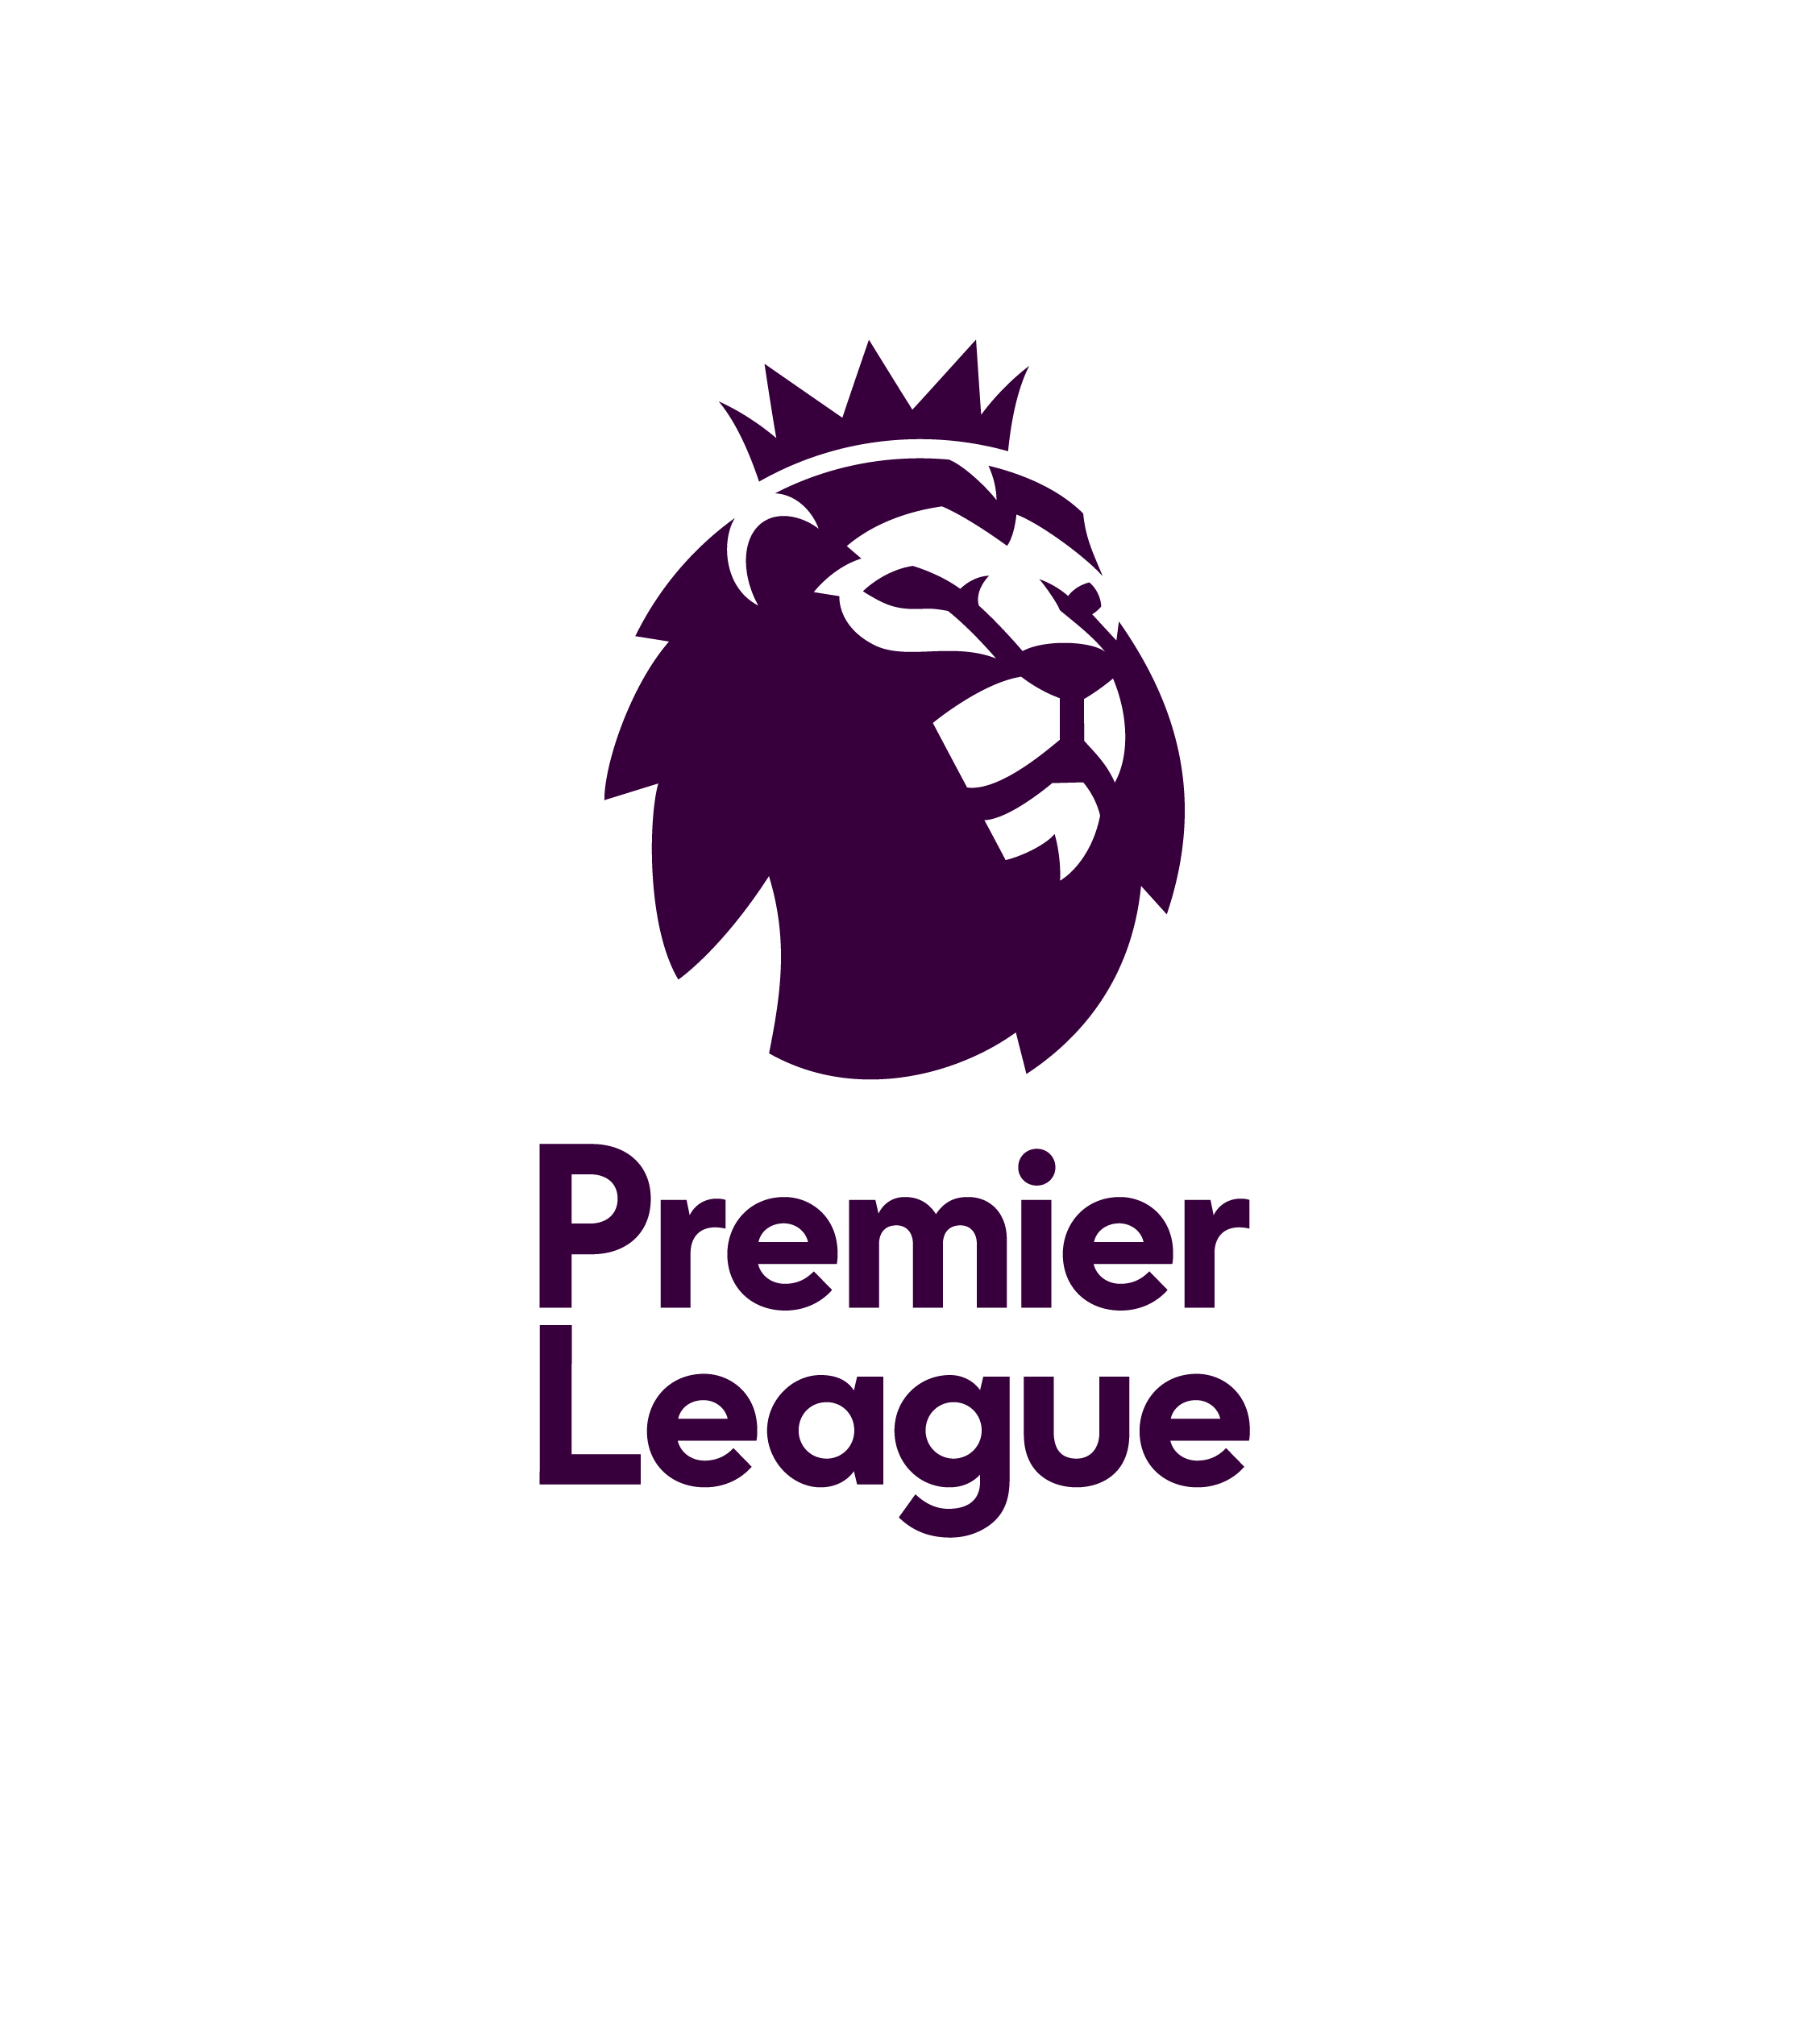 File:The Football League Logo